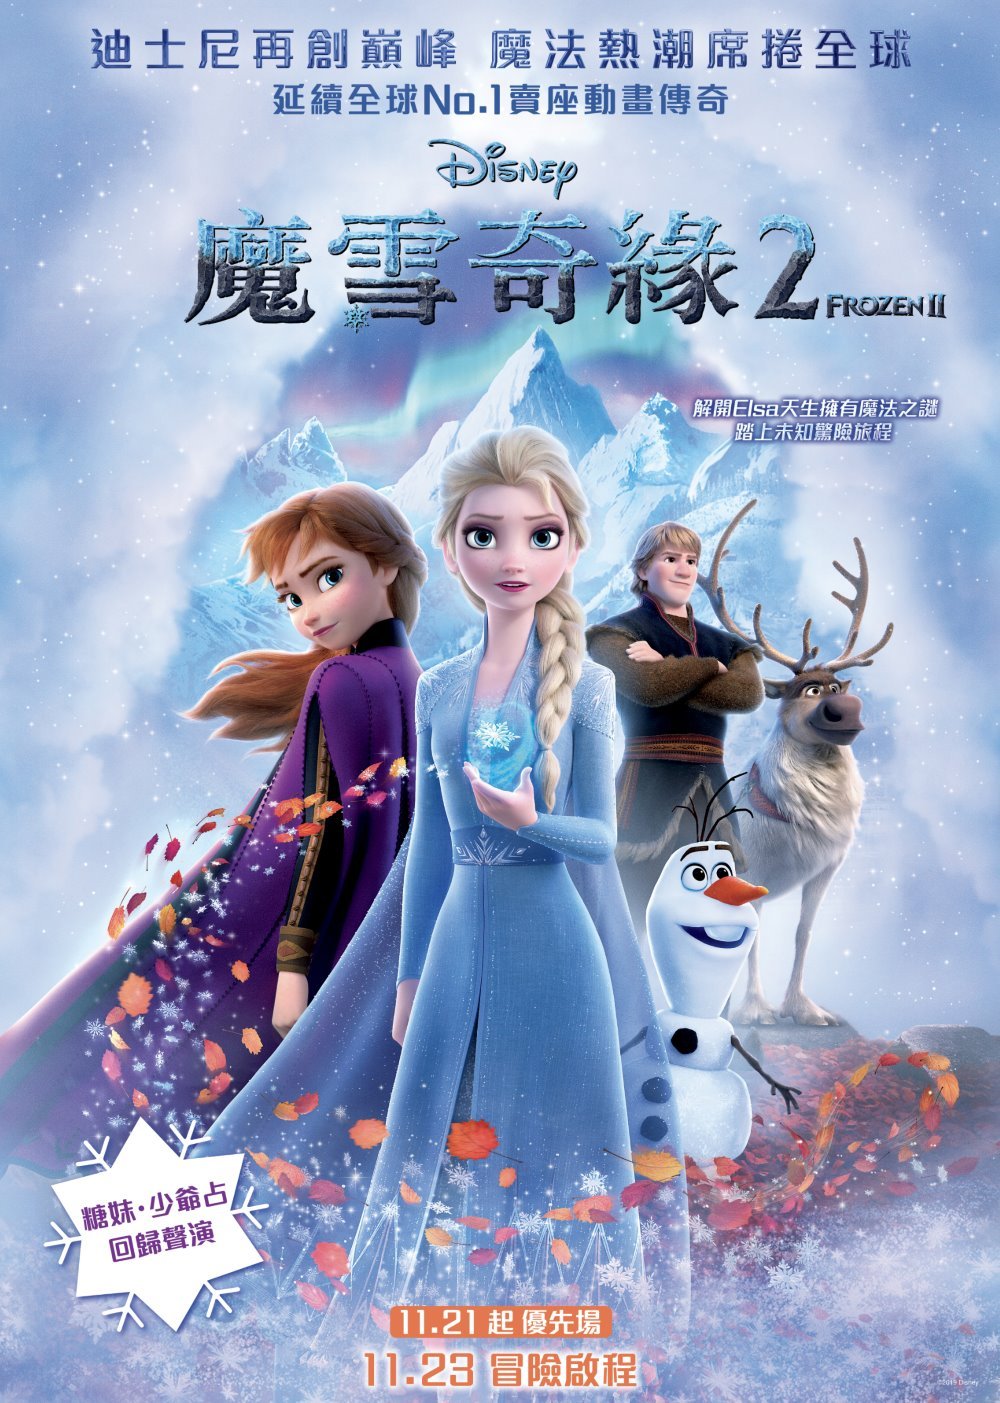 魔雪奇緣2 (2D Onyx 粵語版)電影圖片 - Frozen2_HKPoster_1571659752.jpg